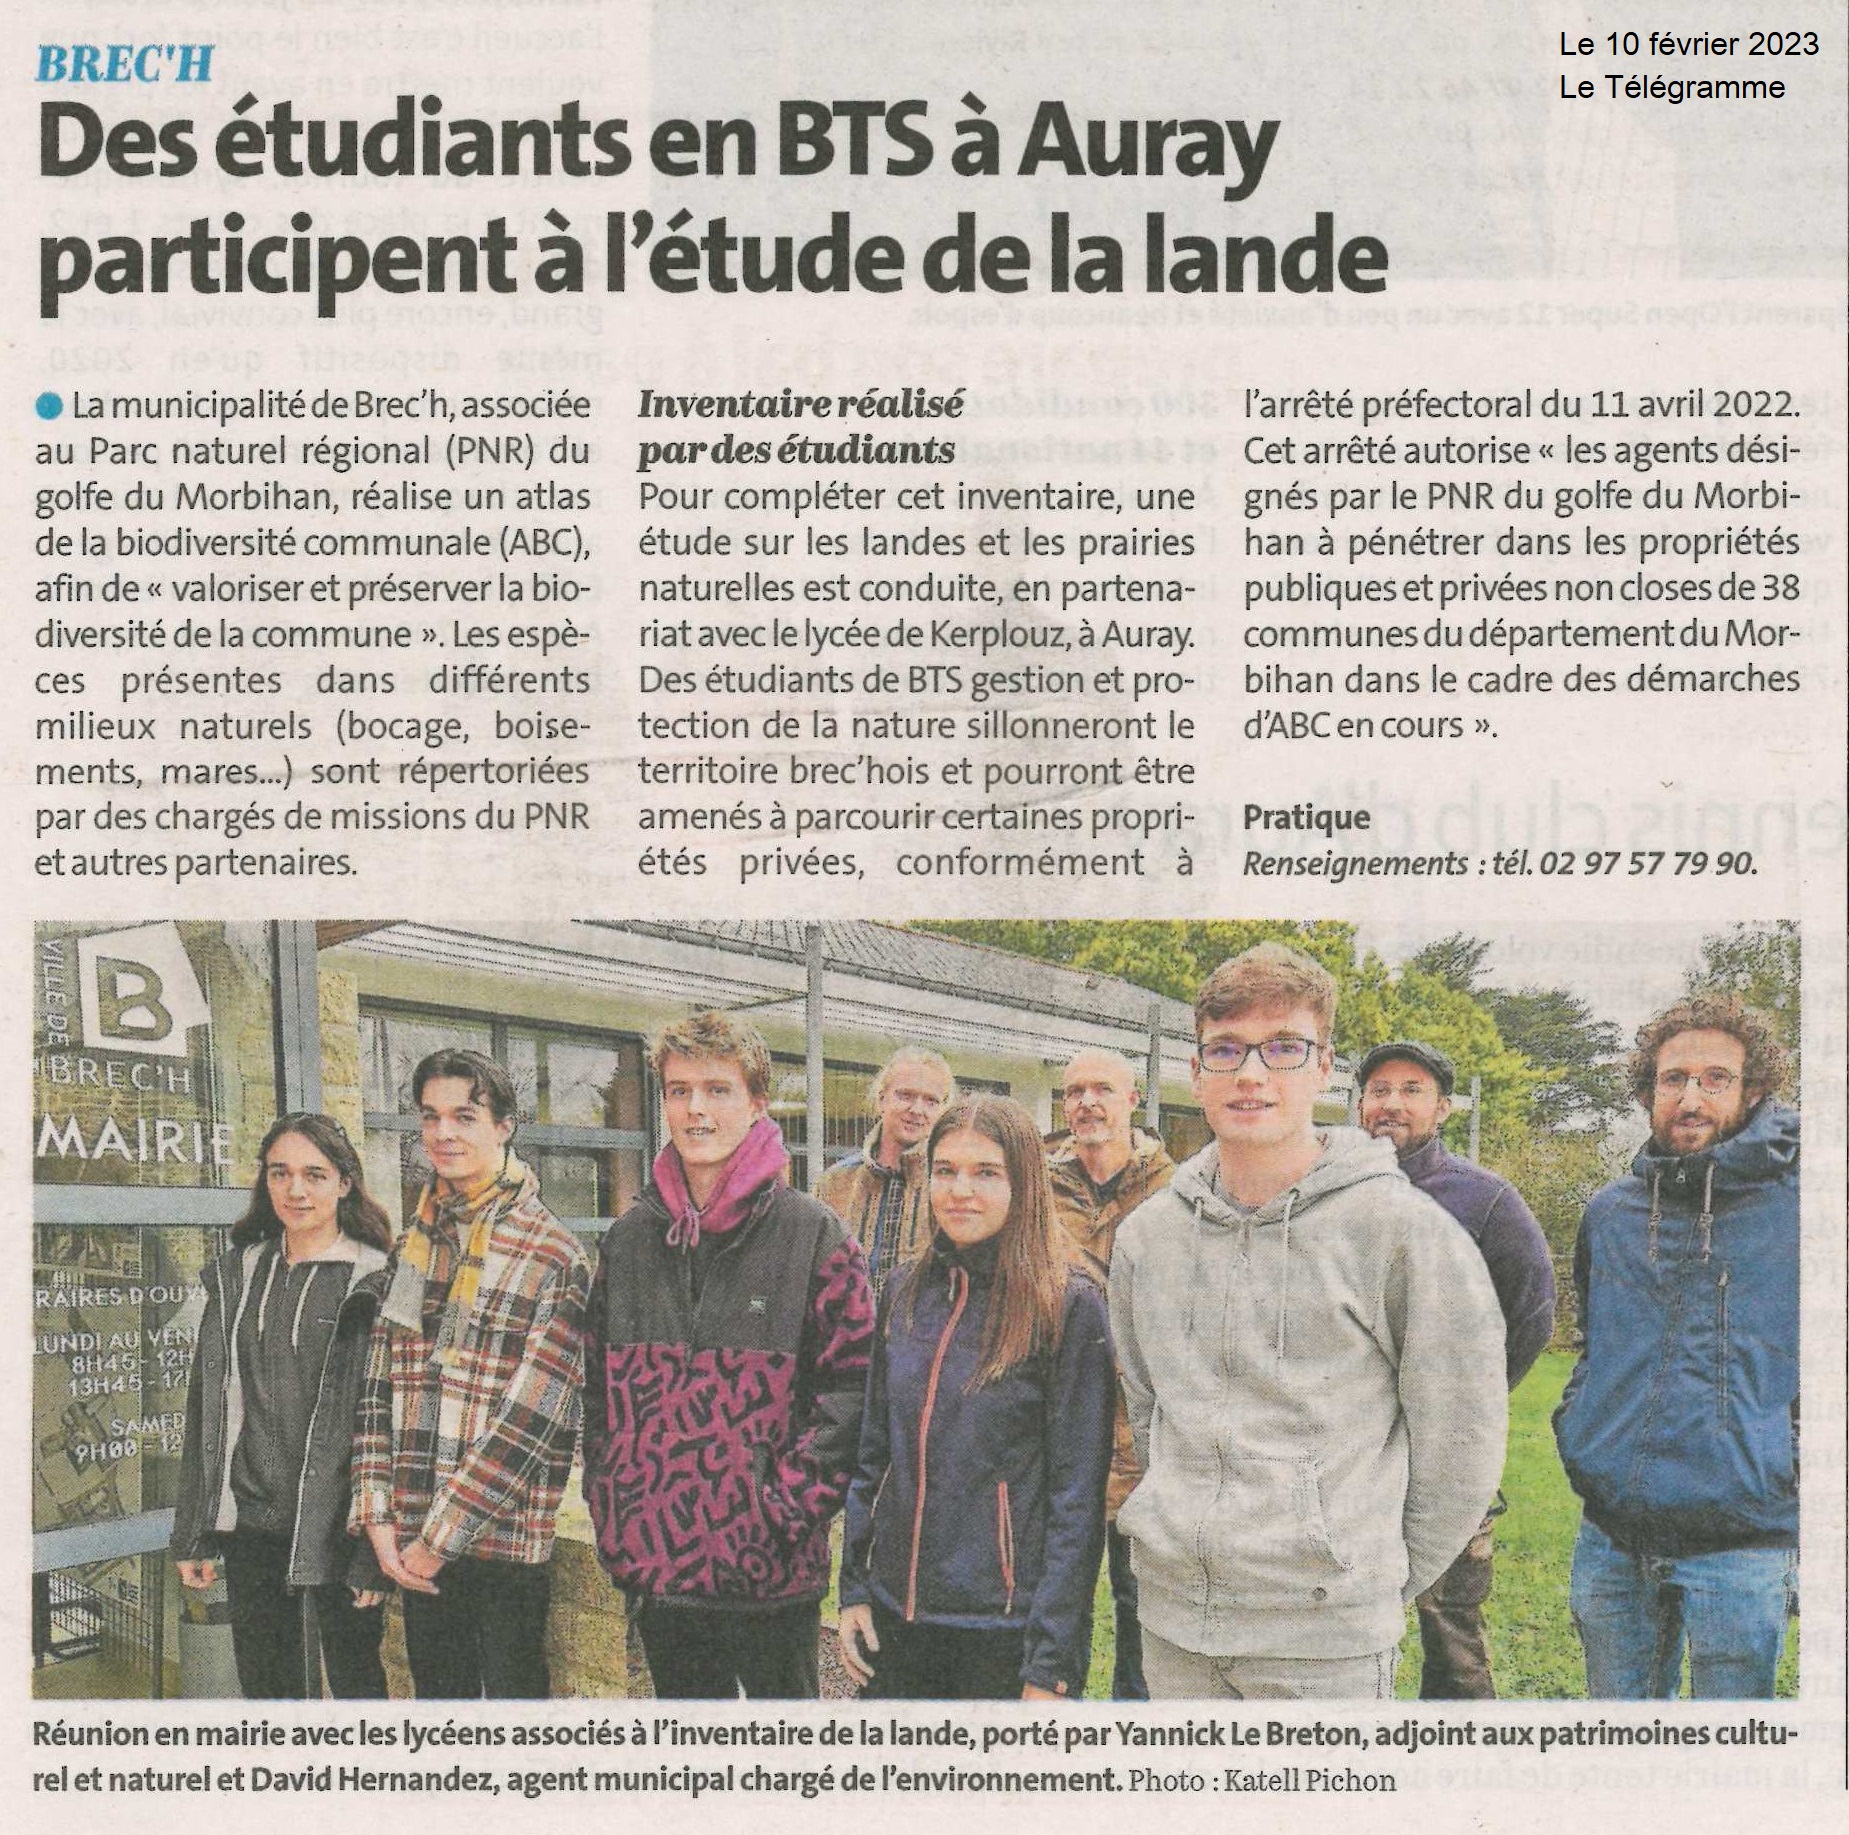 Des étudiants en BTS à Auray participent à l’étude de la lande